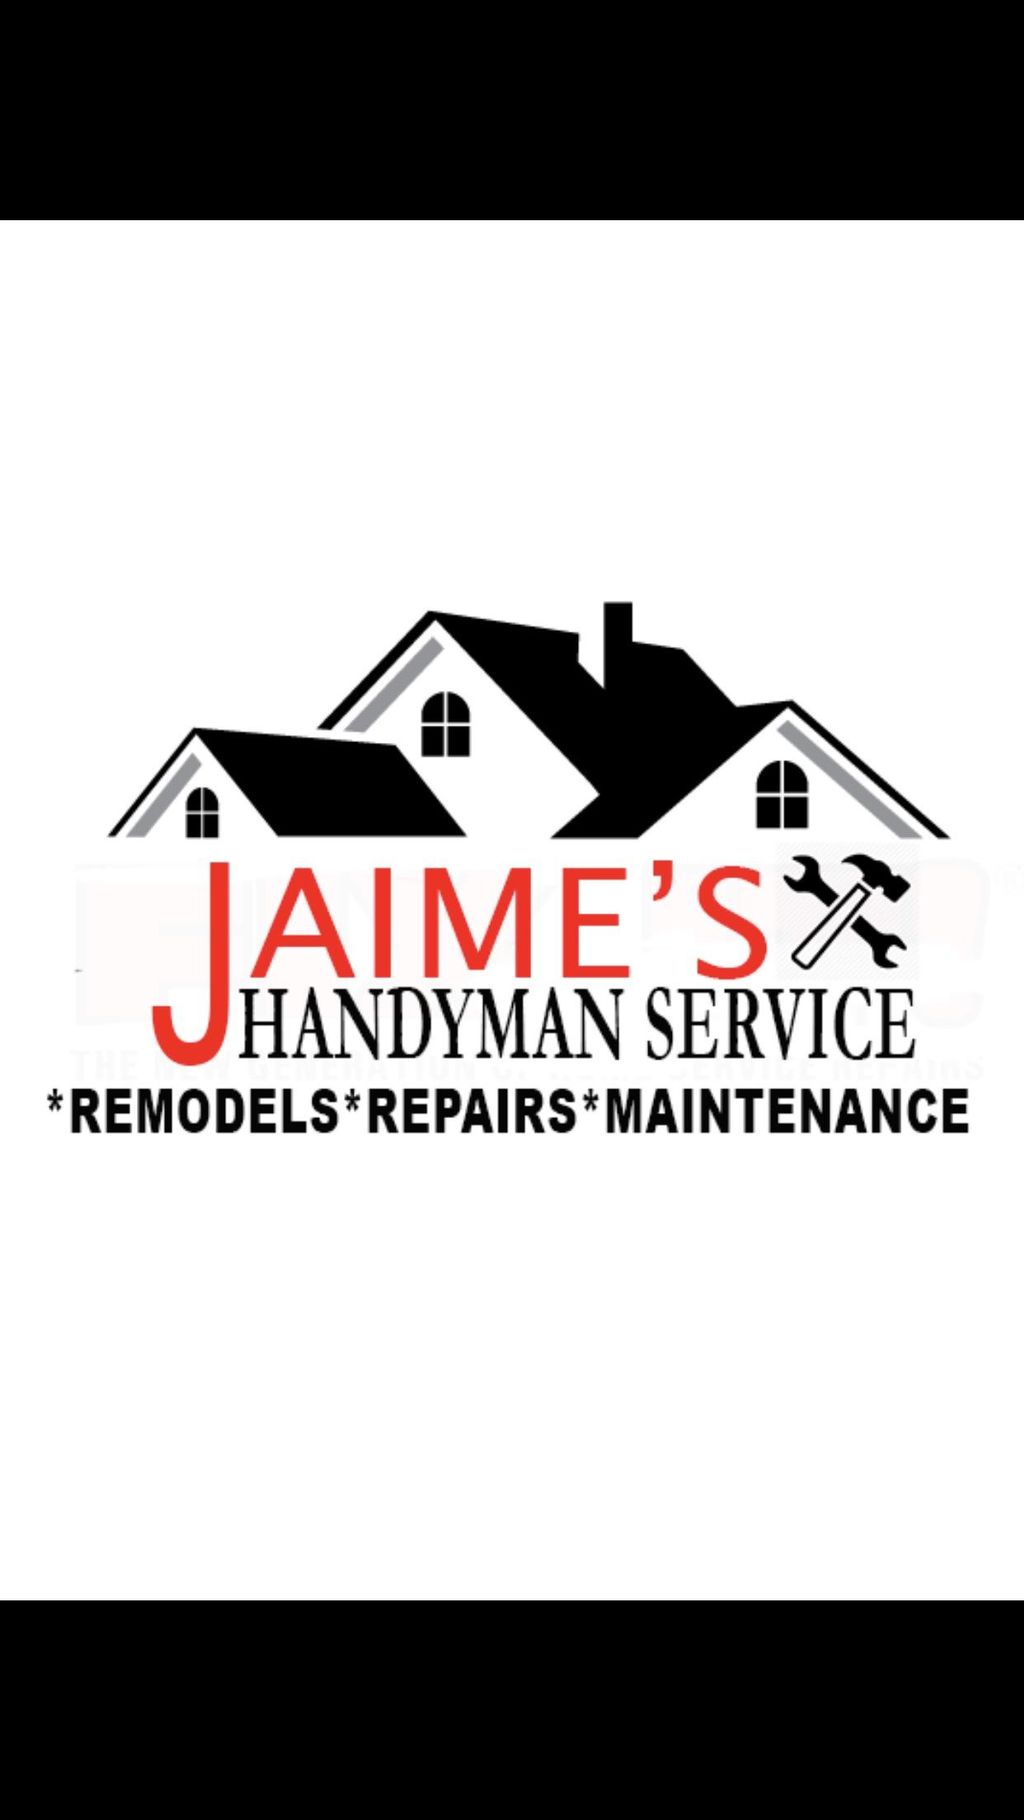 Jaime’s Handyman service